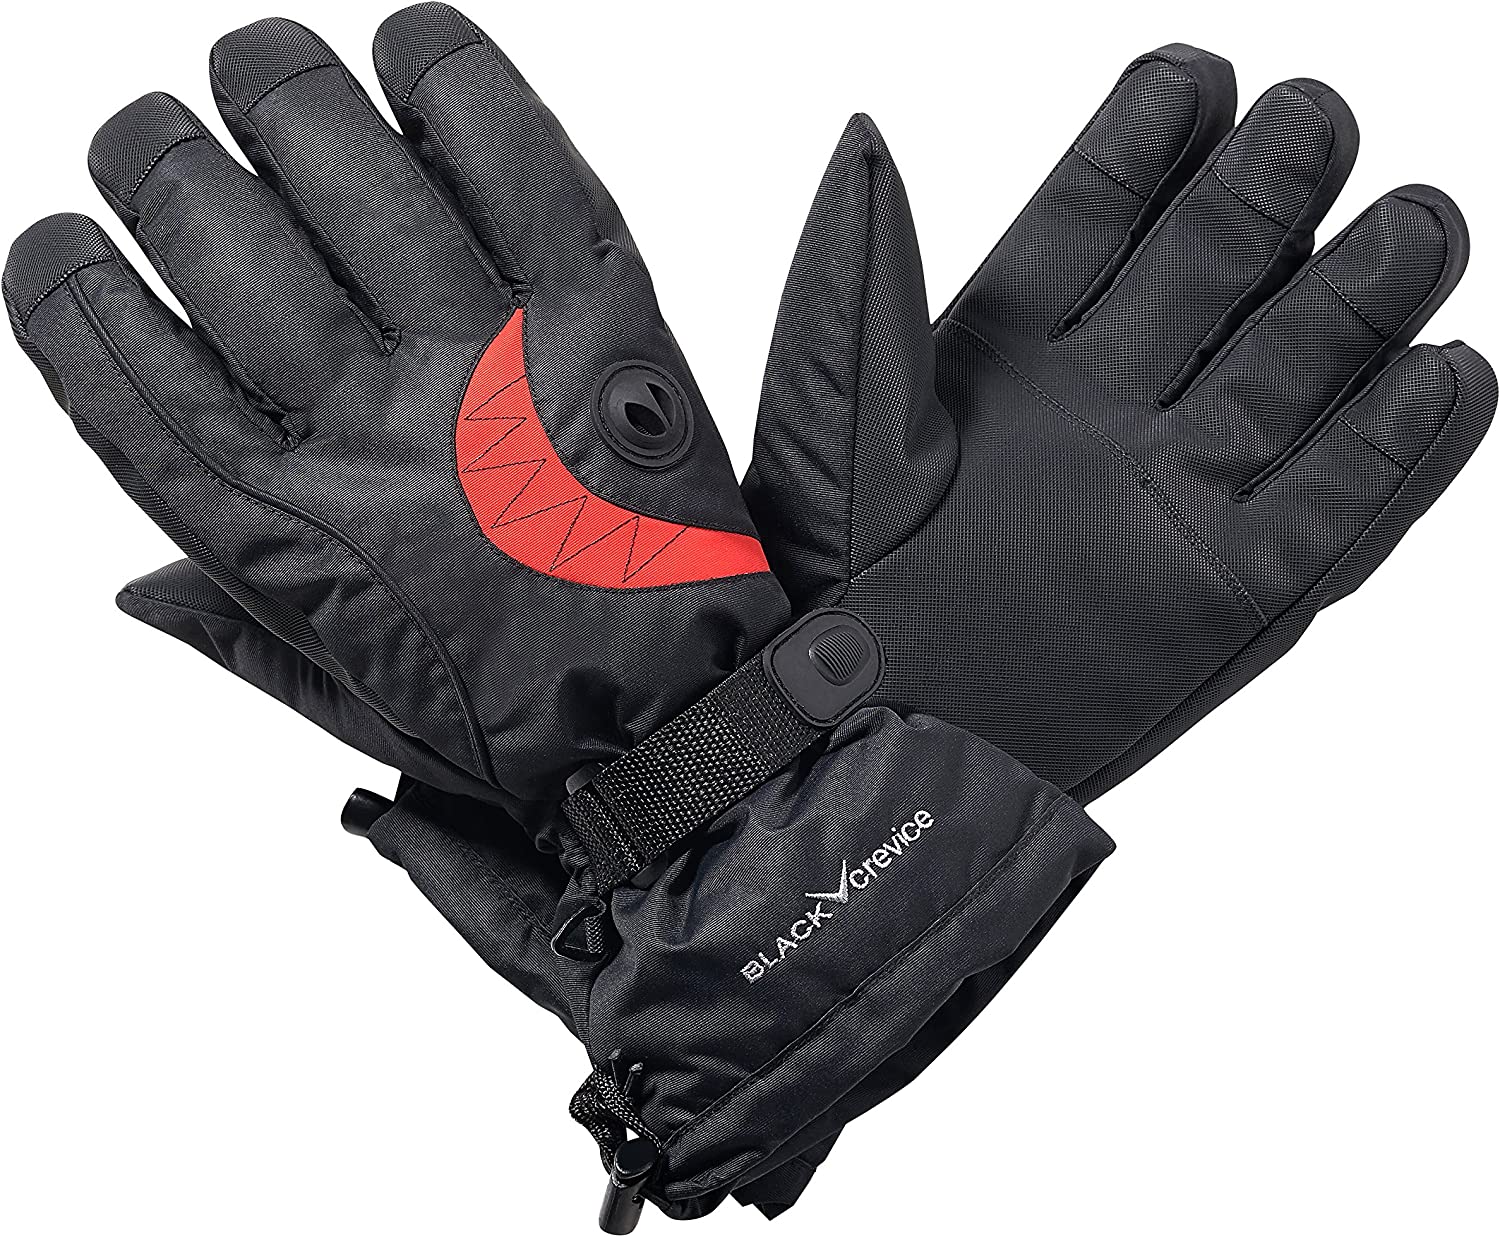 Nowe rękawice narciarskie Black Crevice black/red, rozmiar L/9